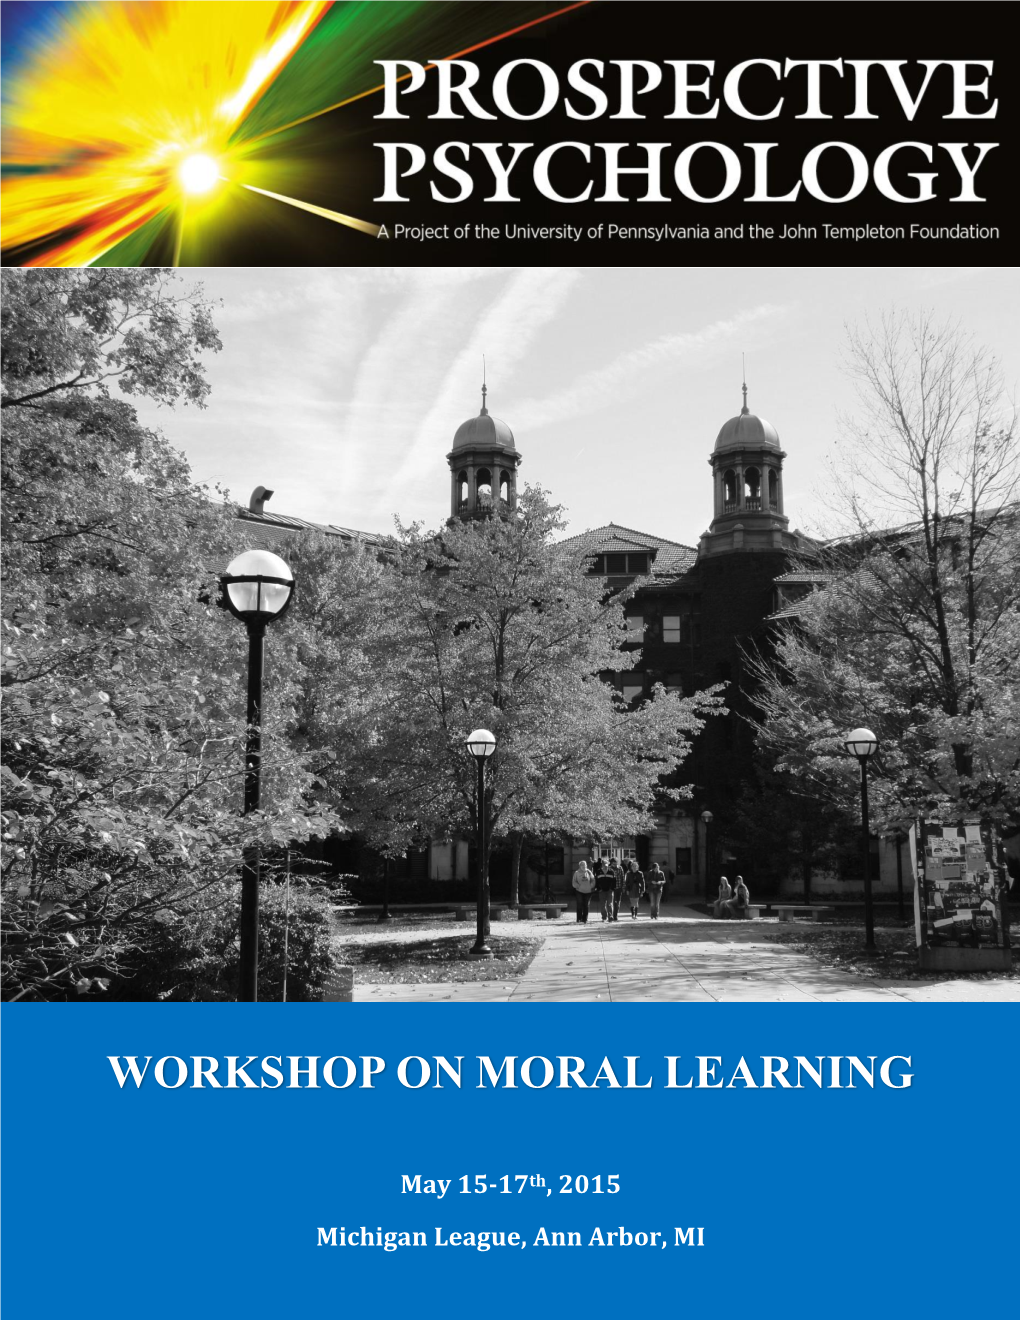 Workshop on Moral Learning